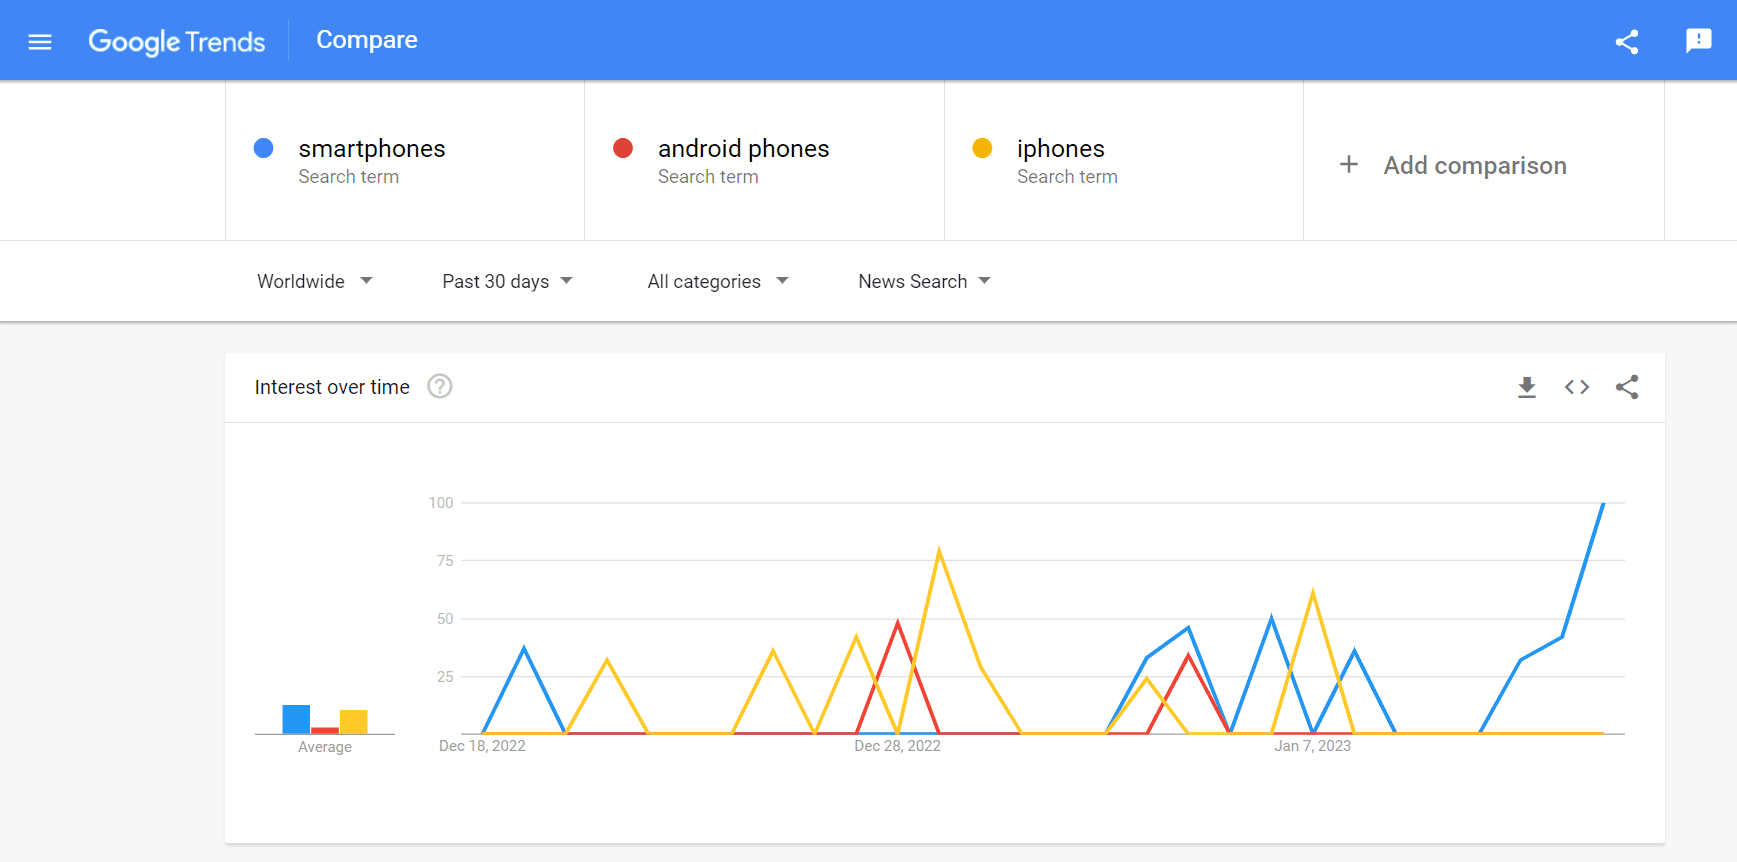 ニュース検索用にフィルタリングされた 3 つのキーワードの Google 検索トレンドの比較